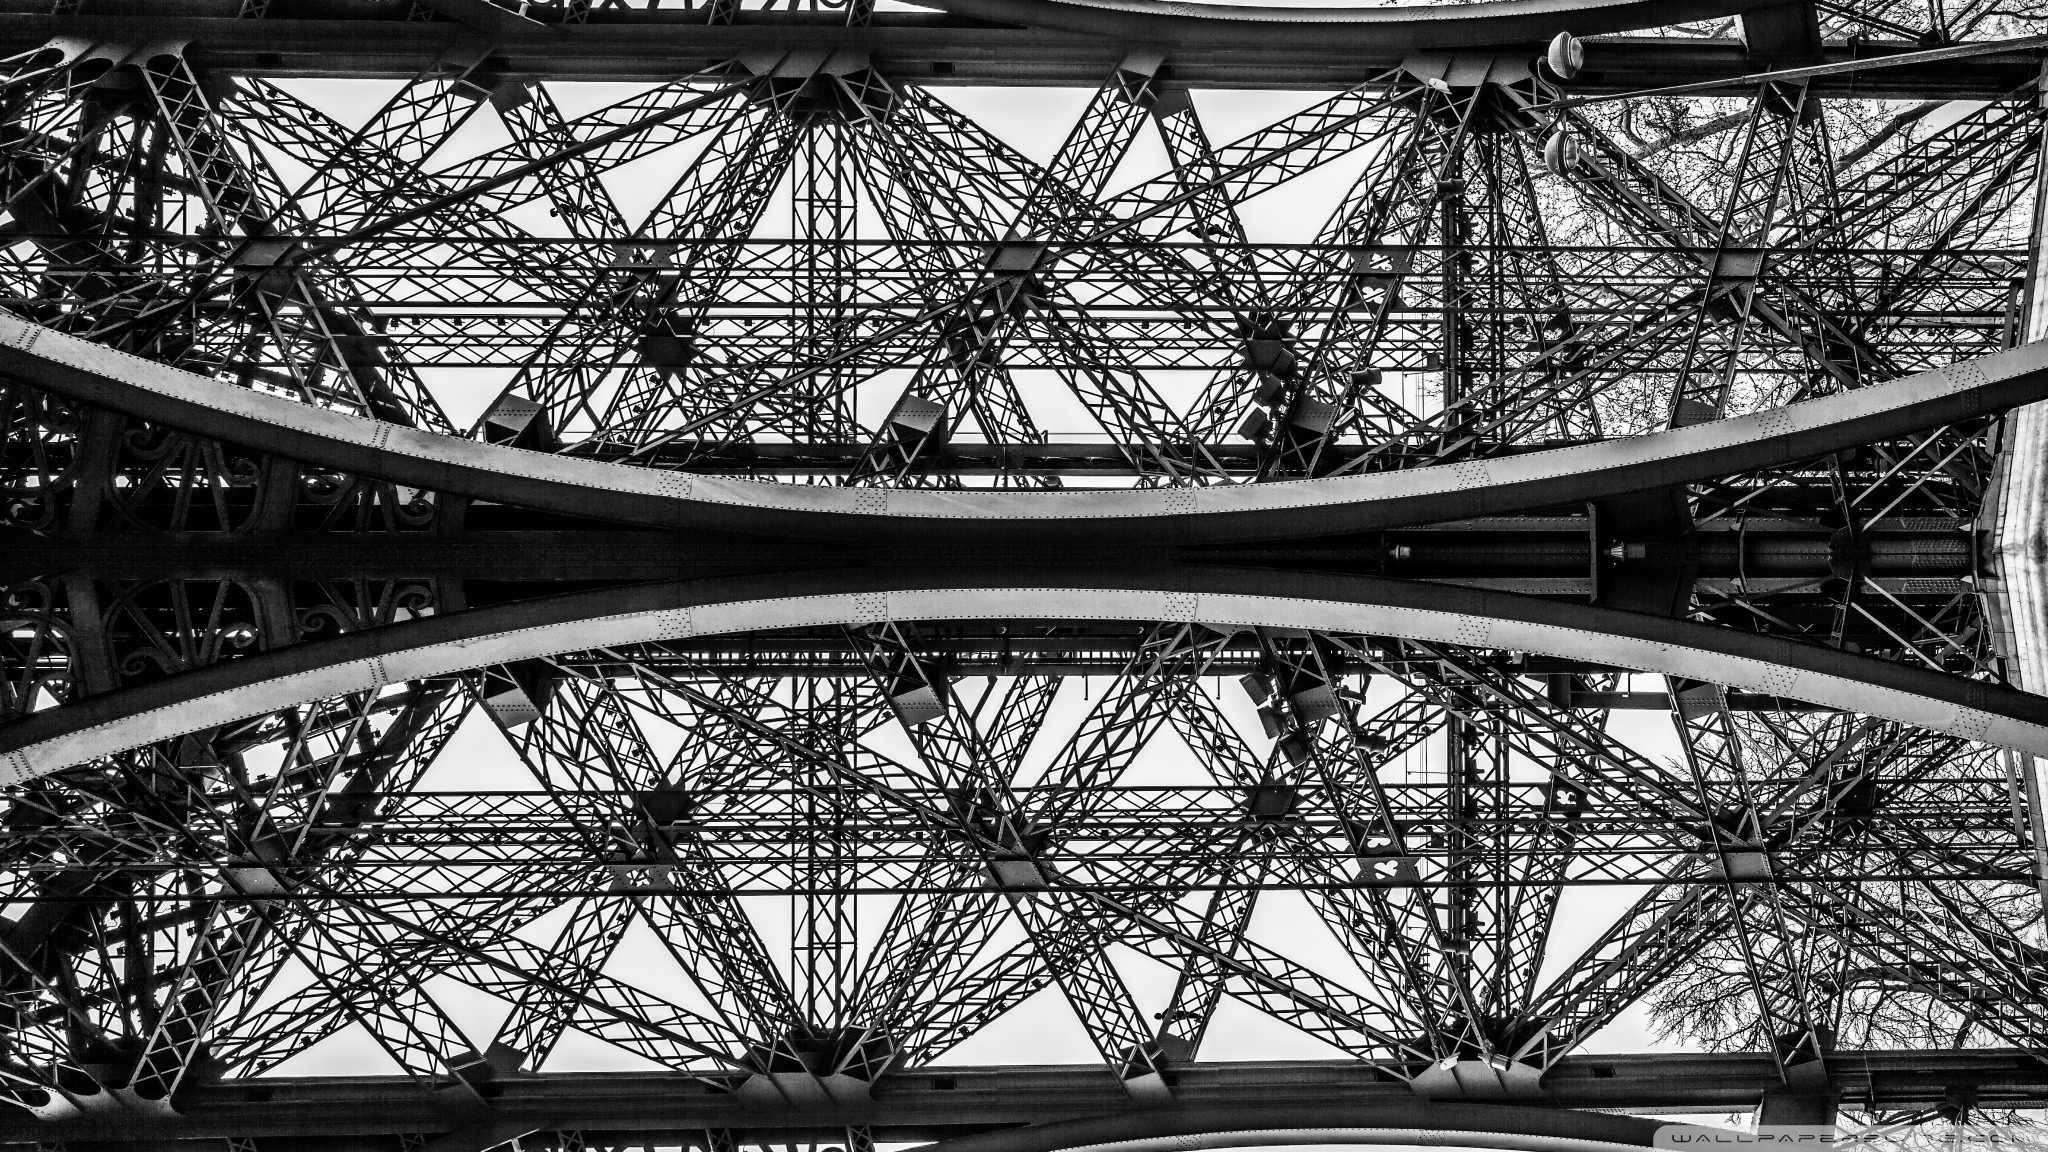 Hd 16 - - Eiffel Tower , HD Wallpaper & Backgrounds